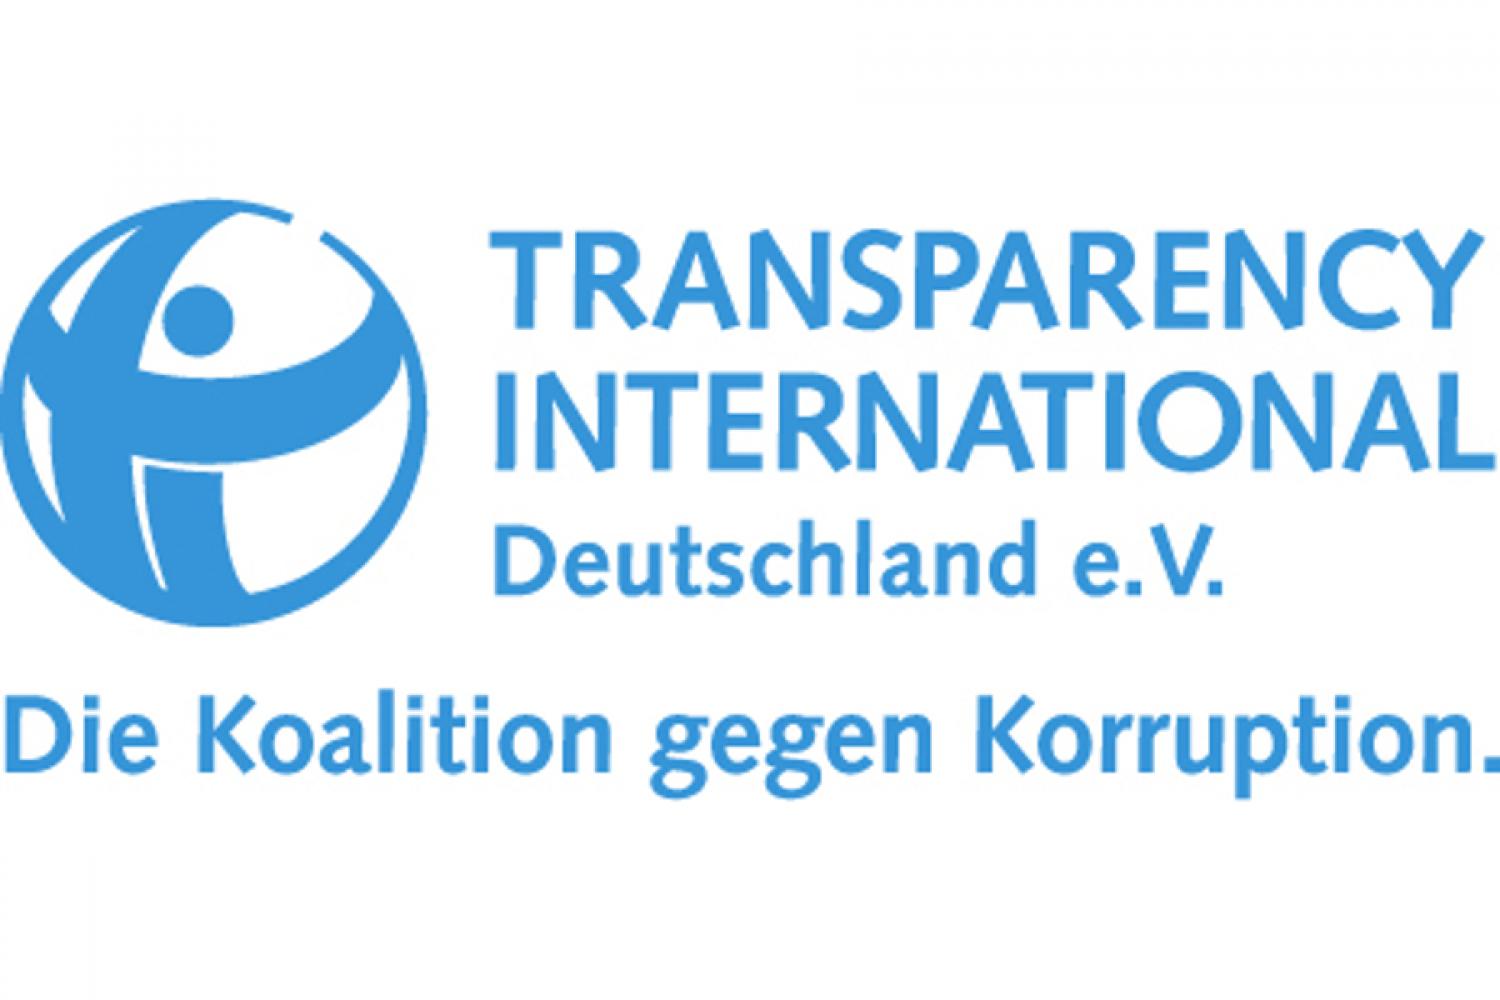 Bild zur Veranstaltung - Transparency International: KorruptionsverhÃ¼tung in der Ã¶ffentlichen Verwaltung